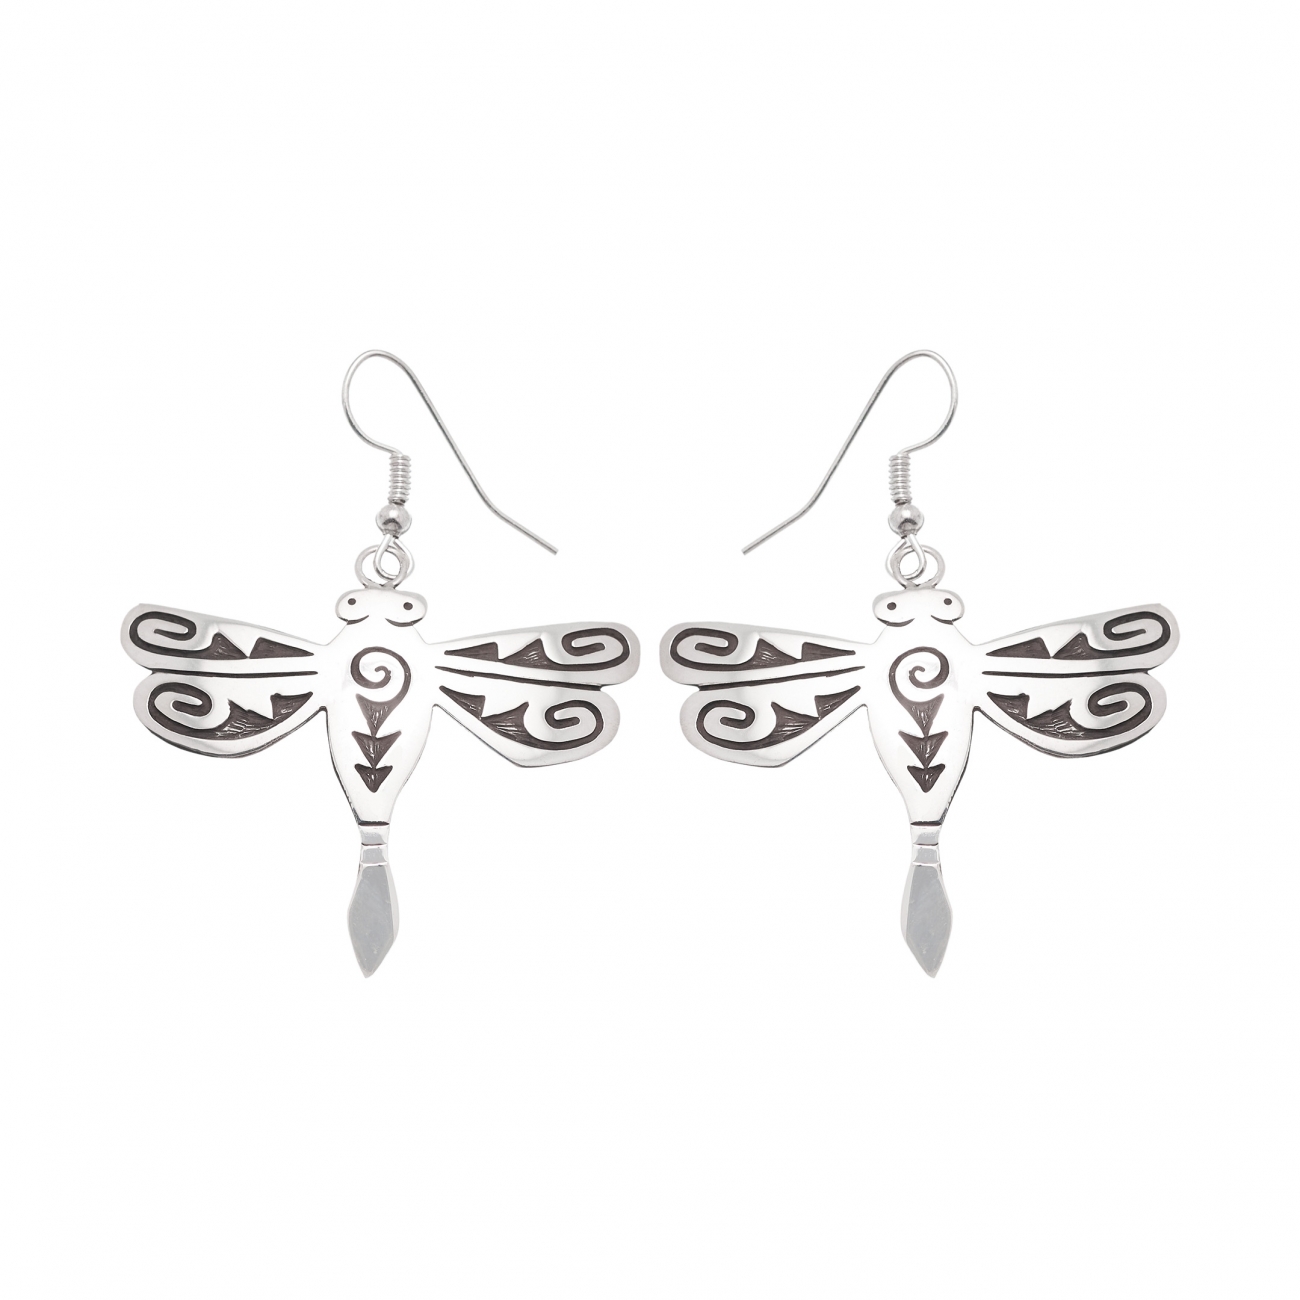 Harpo Paris earrings BO233 silver dragonfly